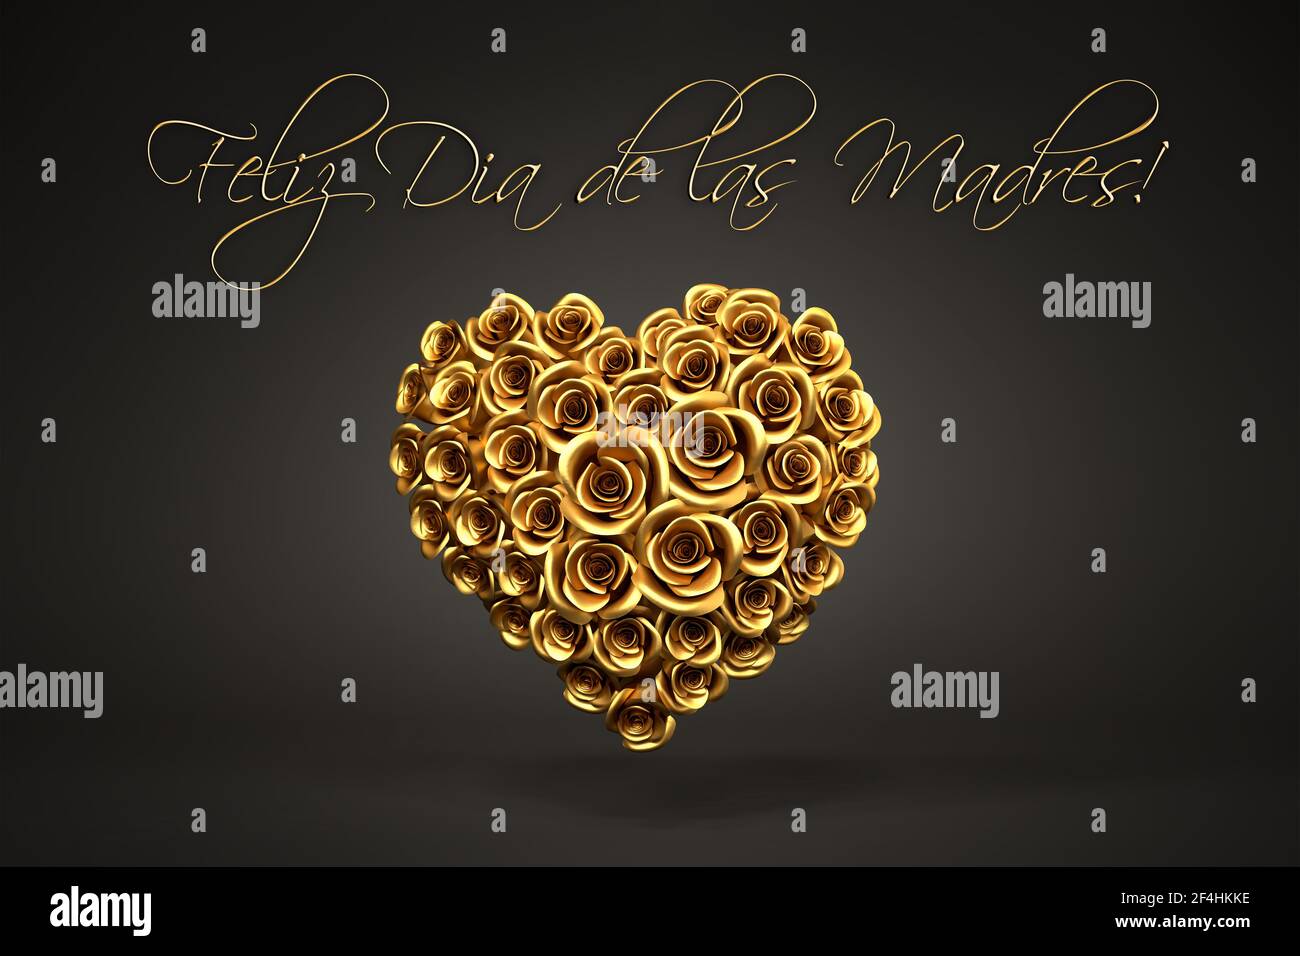 Rendering 3d: Un cuore di rose dorate davanti a uno sfondo nero e il messaggio spagnolo 'Feliz dia de las Madres' ('Happy Mother's Day') in cima. Foto Stock